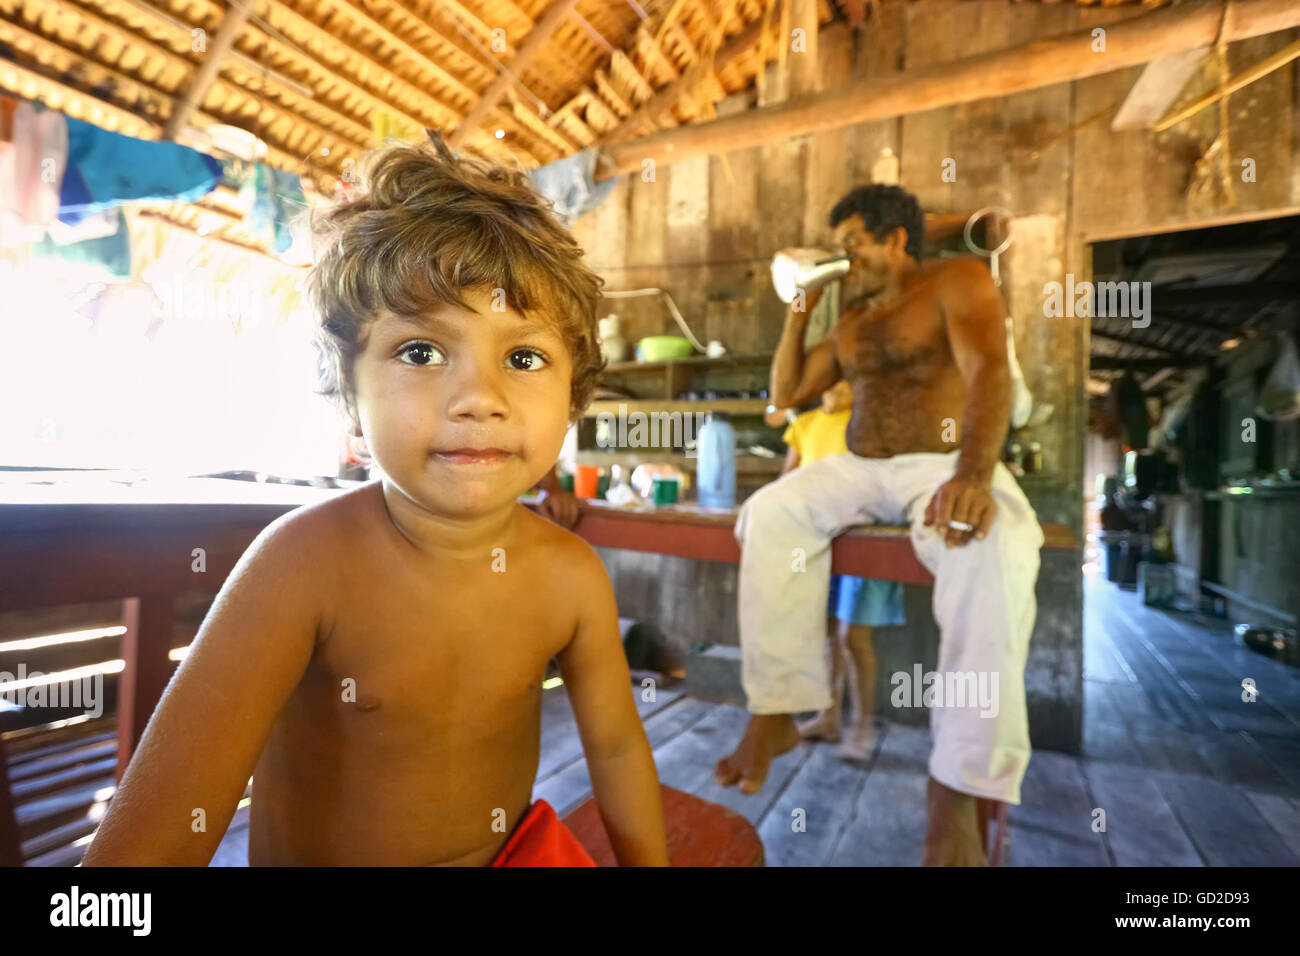 L'Amazonas, Brésil - le 14 août 2008 : Jeune garçon et son père dans une maison en bois, sur l'Amazone banque. Banque D'Images